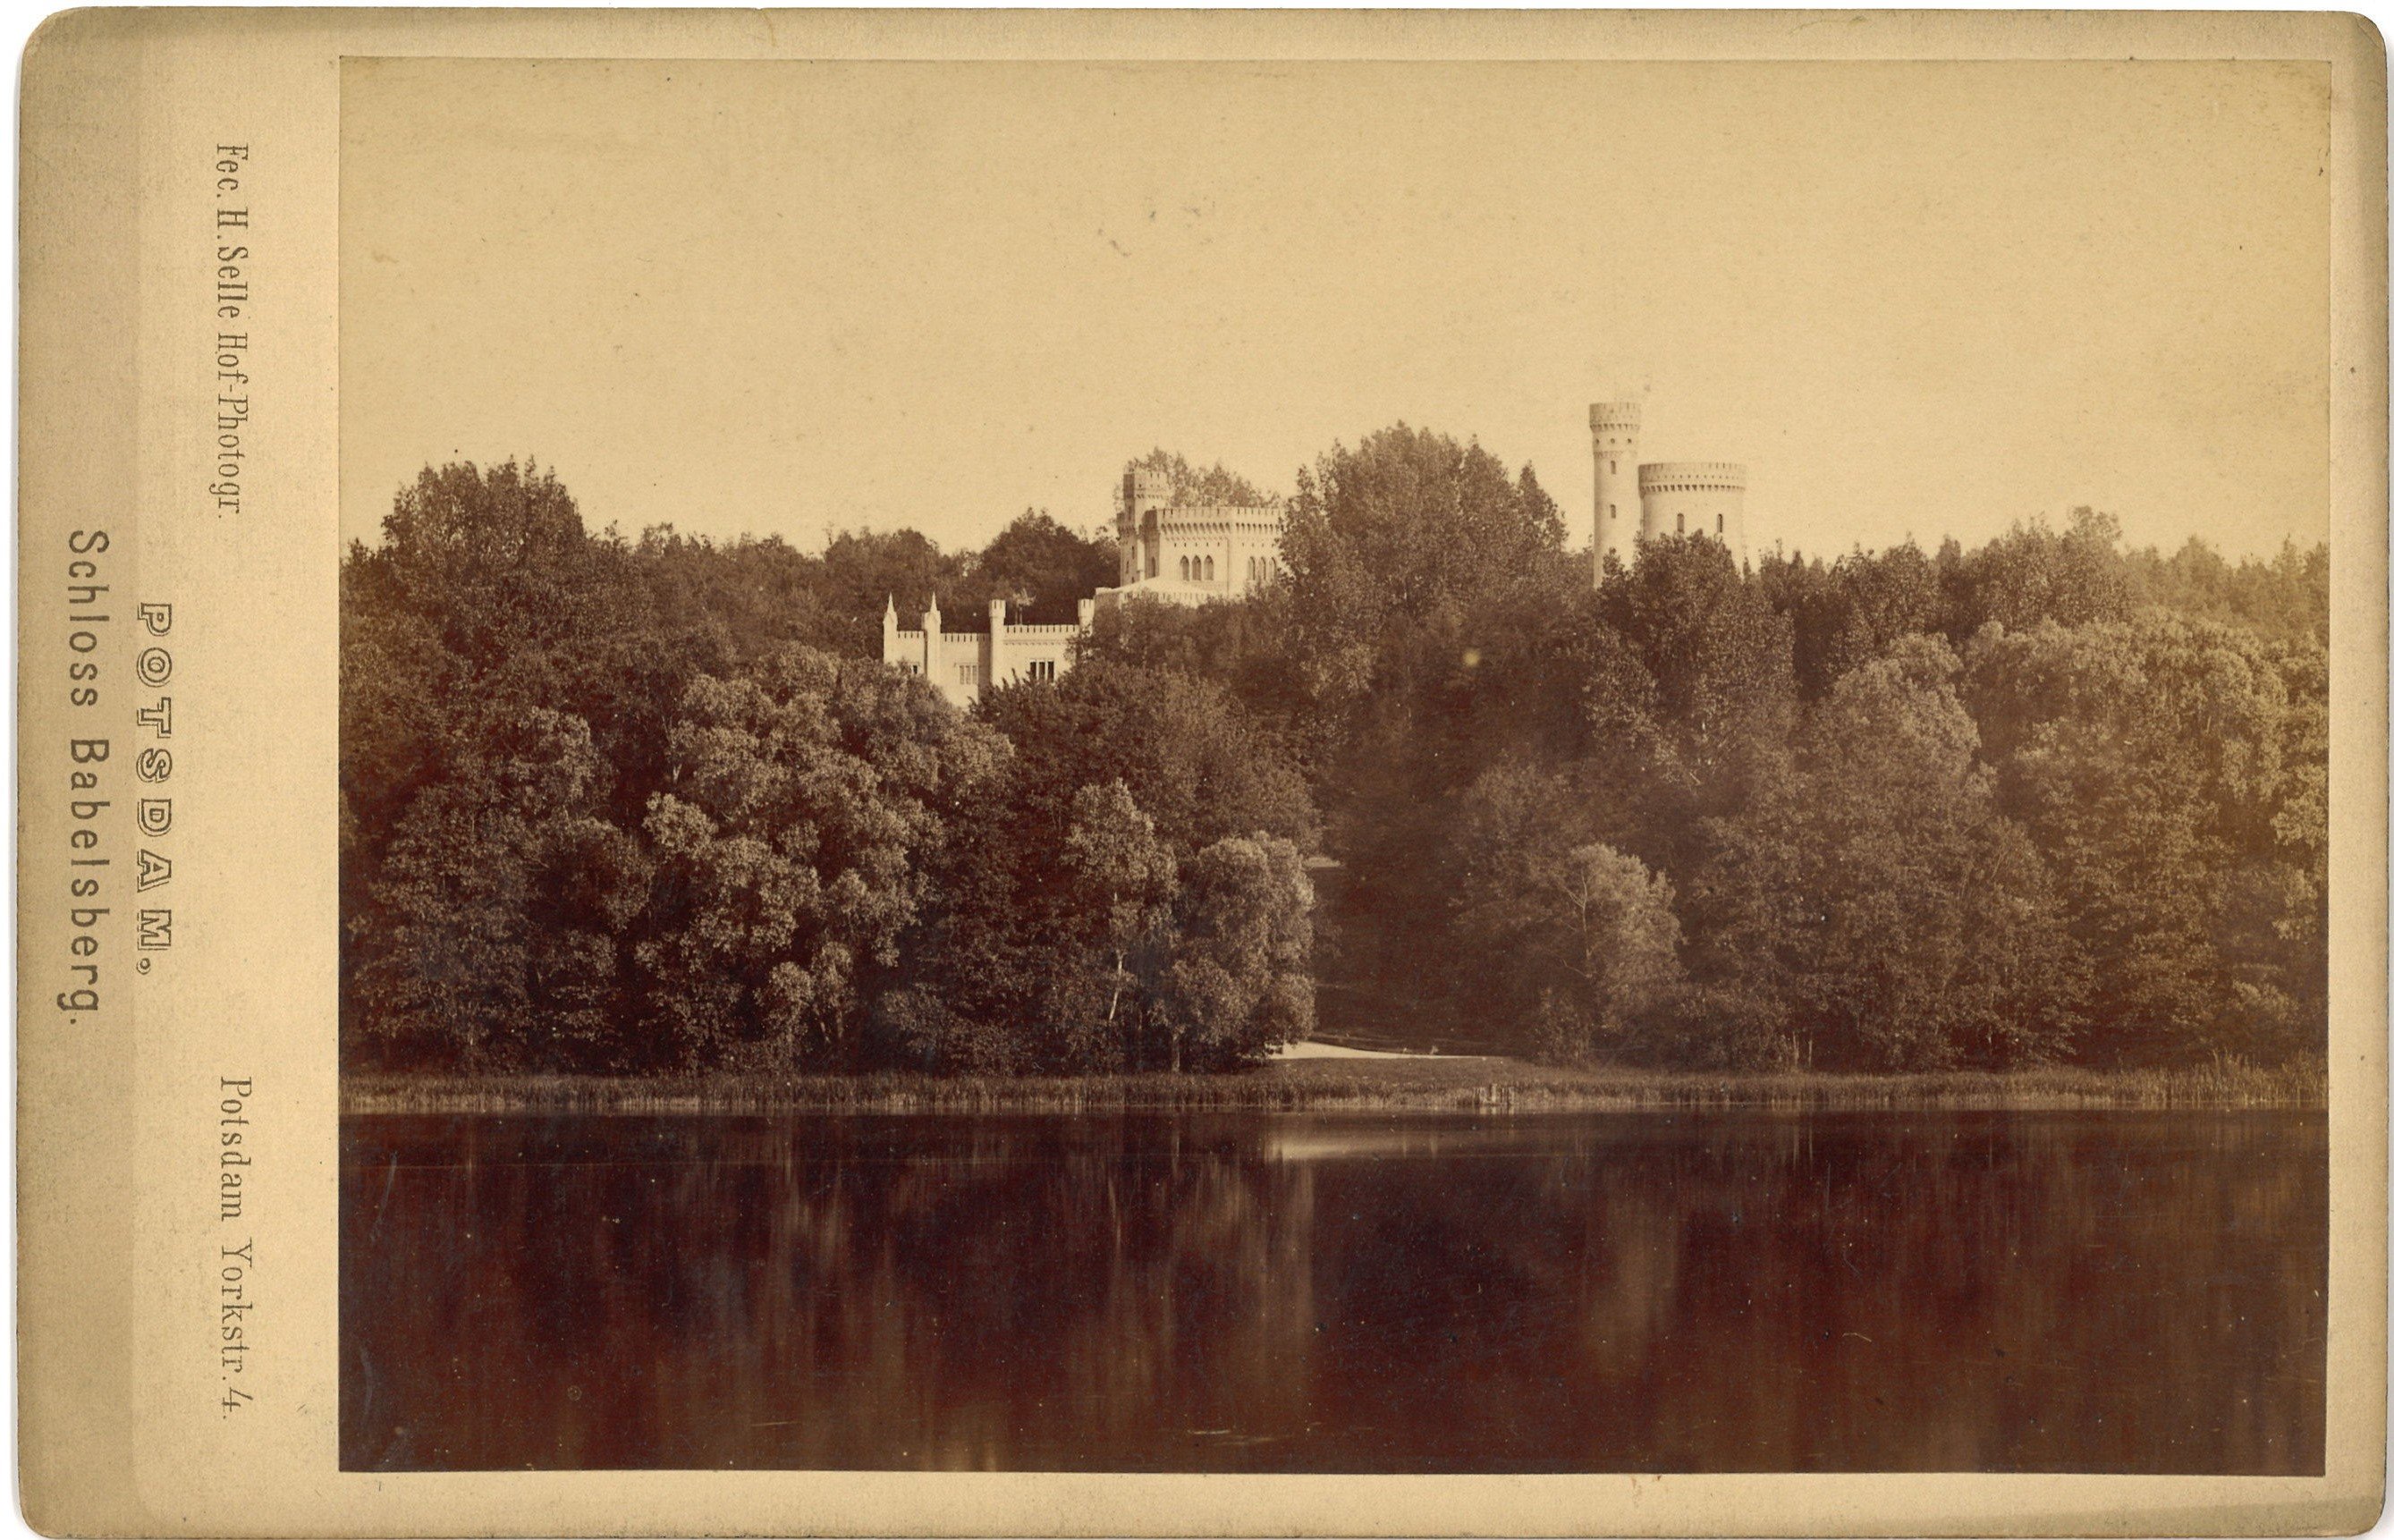 Potsdam-Babelsberg: Schloss Babelsberg über die Havel von Nordwesten (Landesgeschichtliche Vereinigung für die Mark Brandenburg e.V., Archiv CC BY)